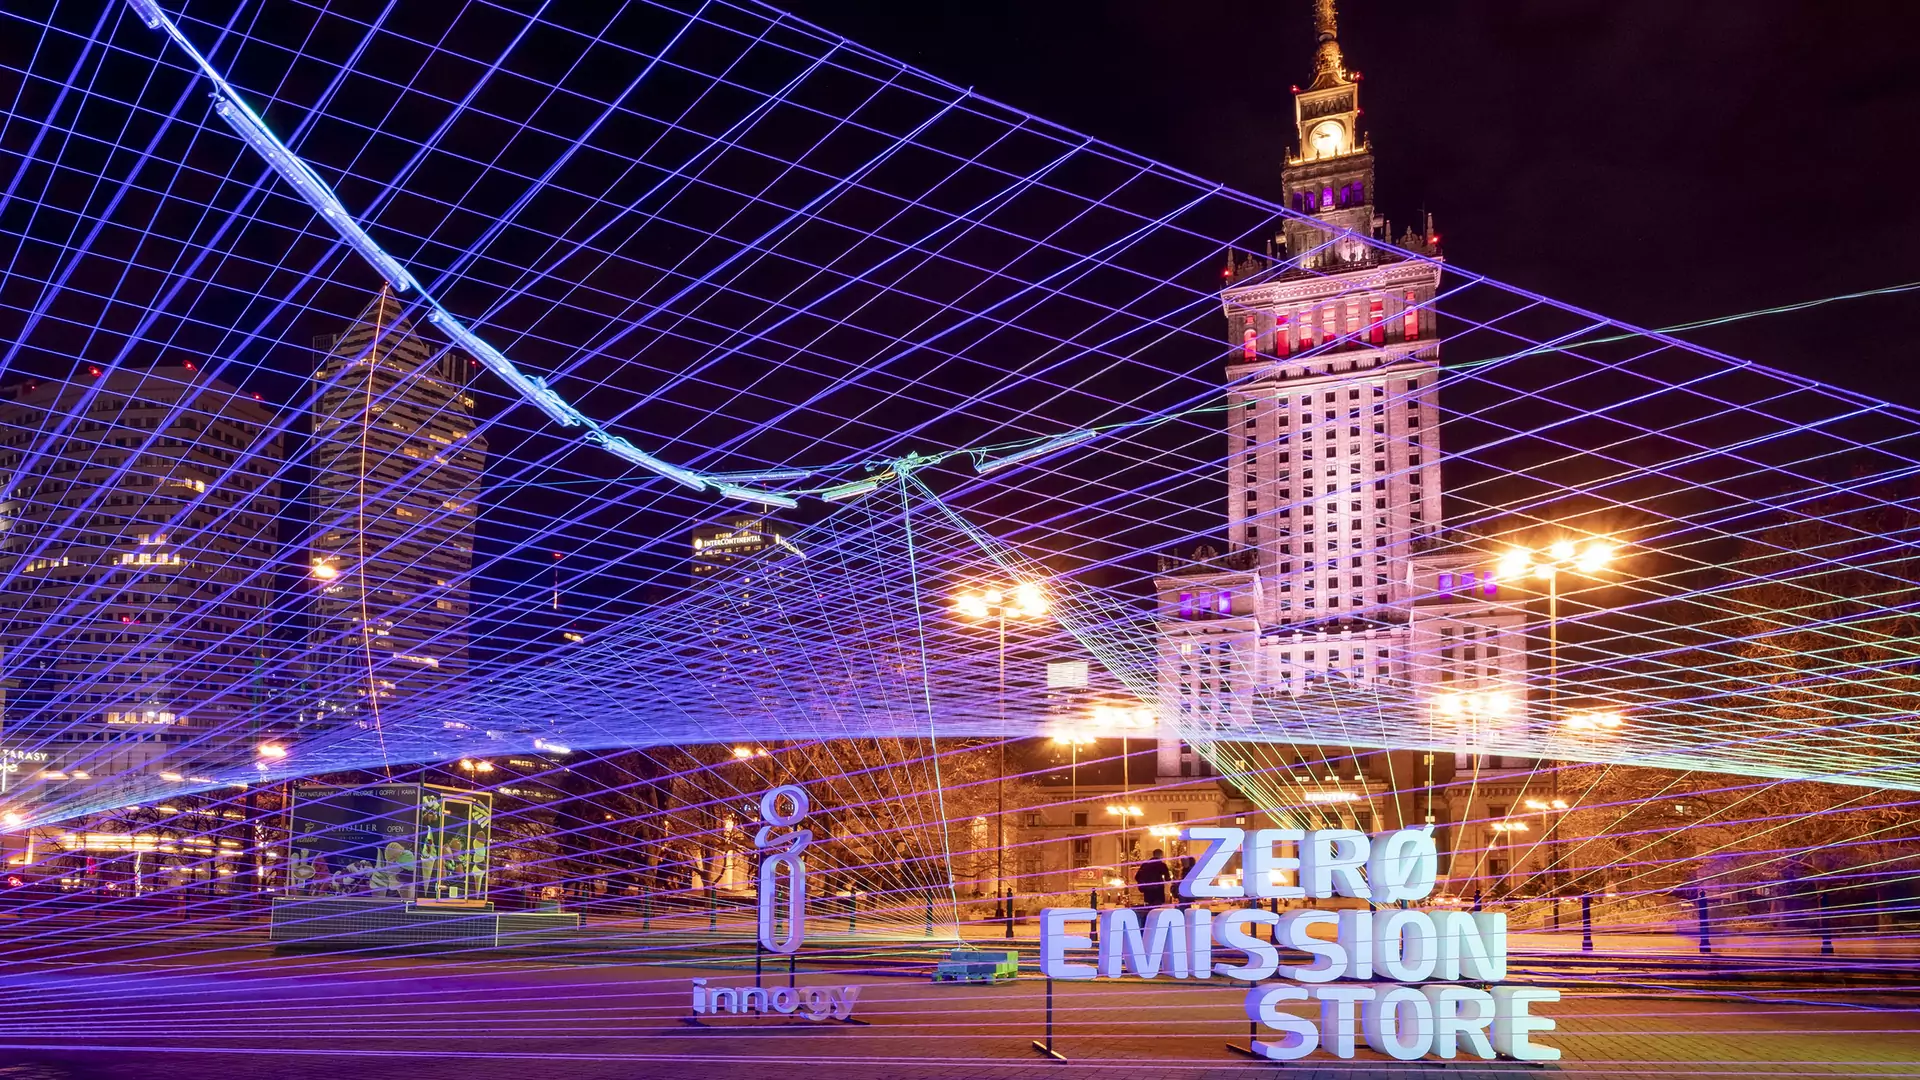 "Naszym marzeniem jest miasto wolne od smogu". Pierwszy w Polsce Zero Emission Store już otwarty